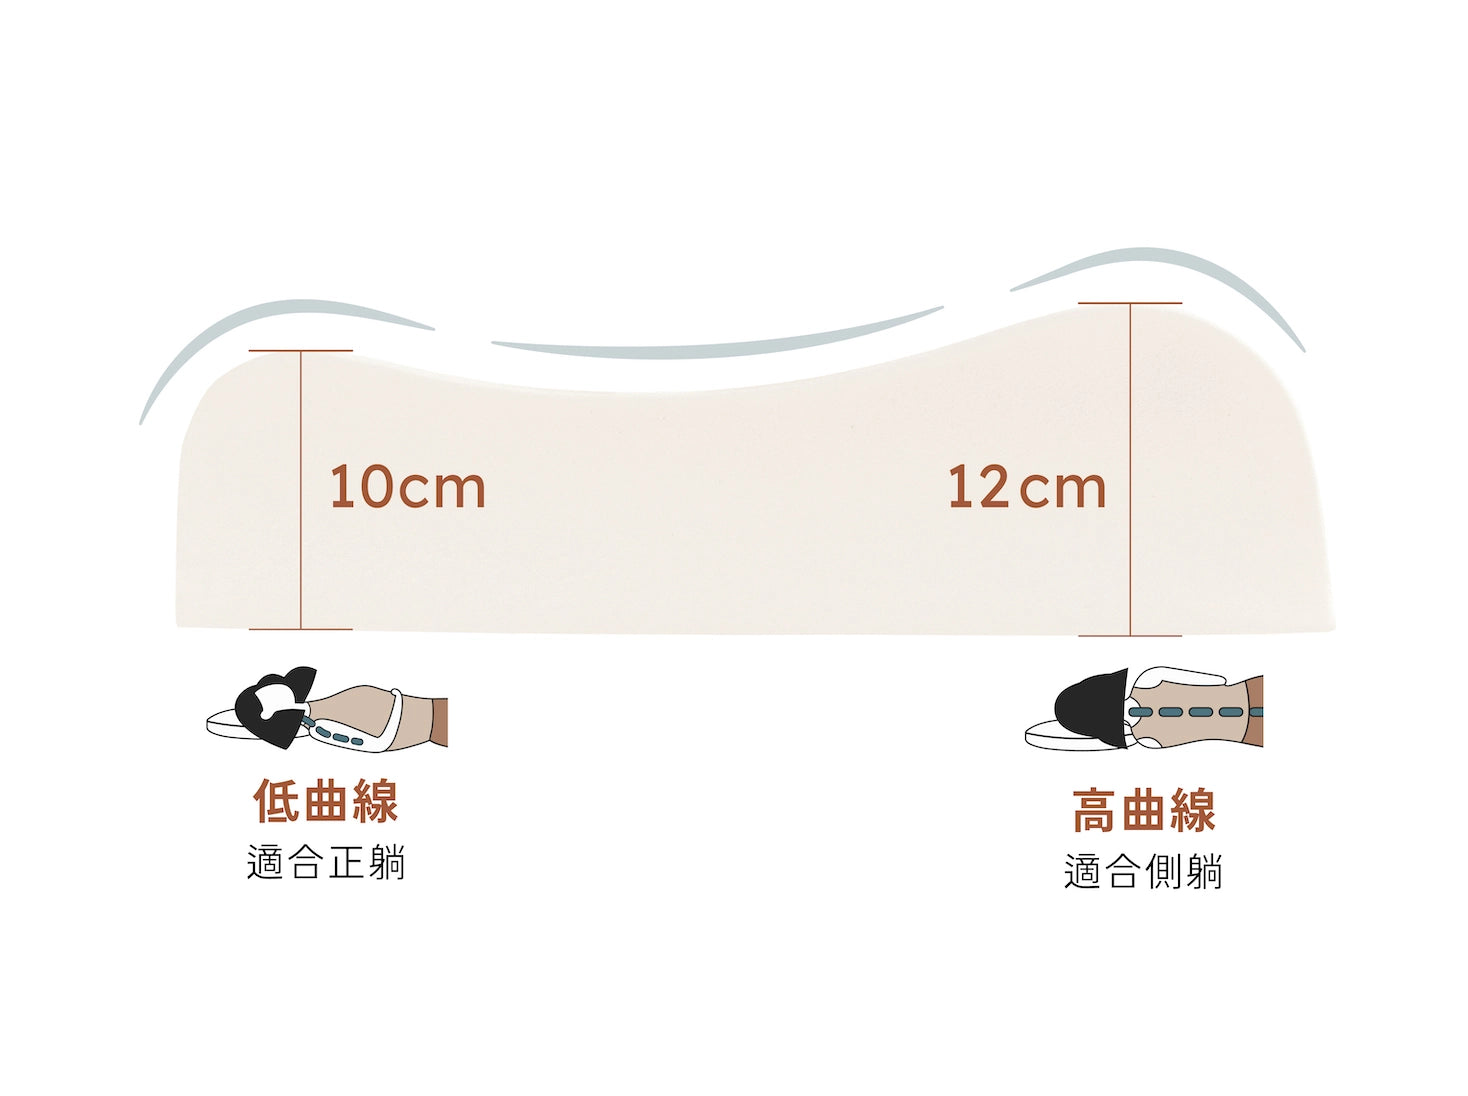 人體工學 100% 天然乳膠枕產品特色照 - 兩種高度 雙向可枕